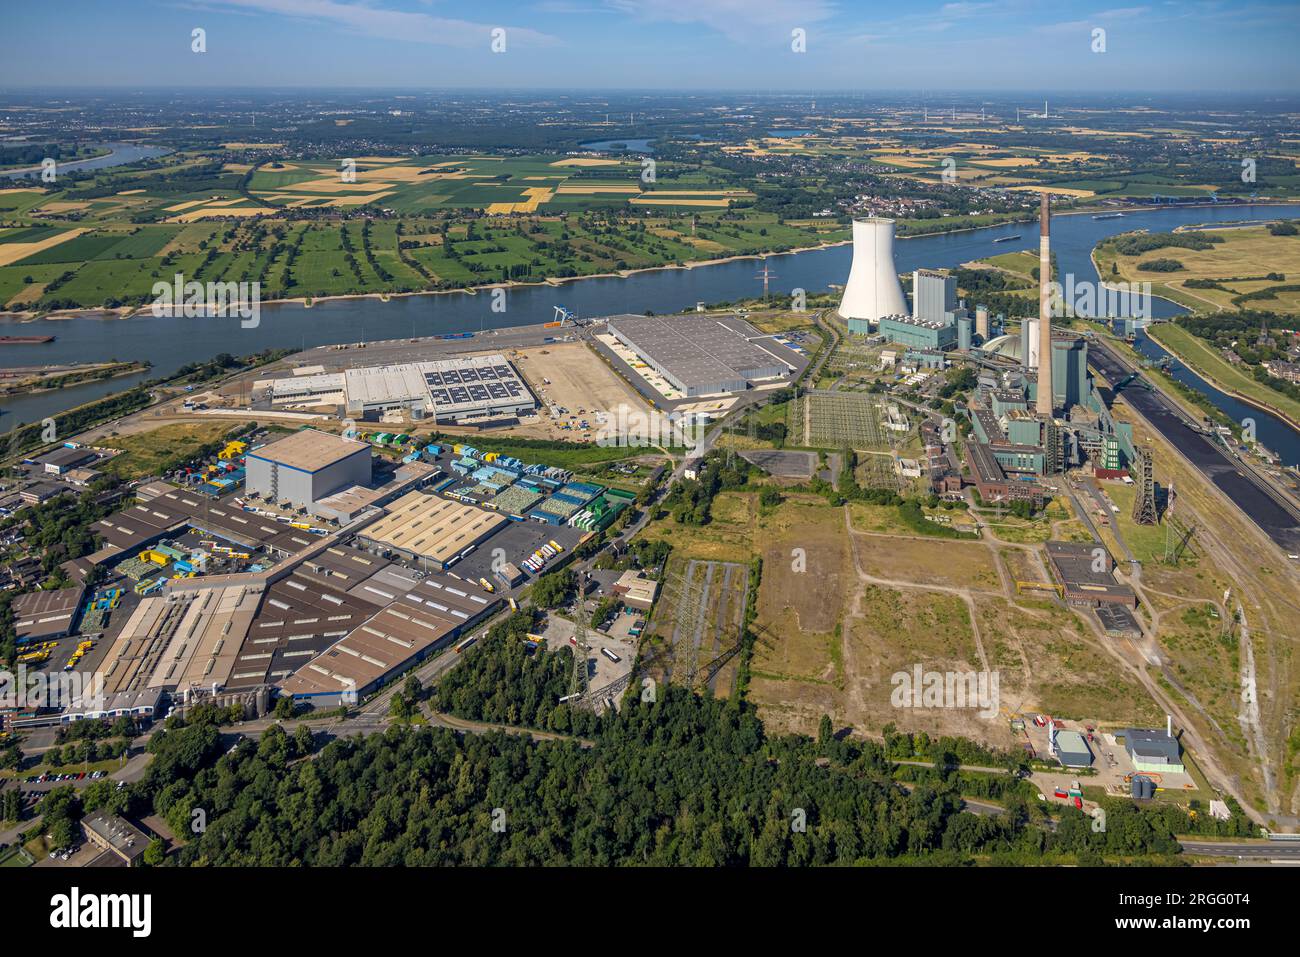 Luftbild, logport VI Baugebiet, STEAG Kraftwerk Walsum am Fluss Rhein, Alt-Walsum, Duisburg, Ruhrgebiet, Nordrhein-Westfalen, Deutschland Stock Photo